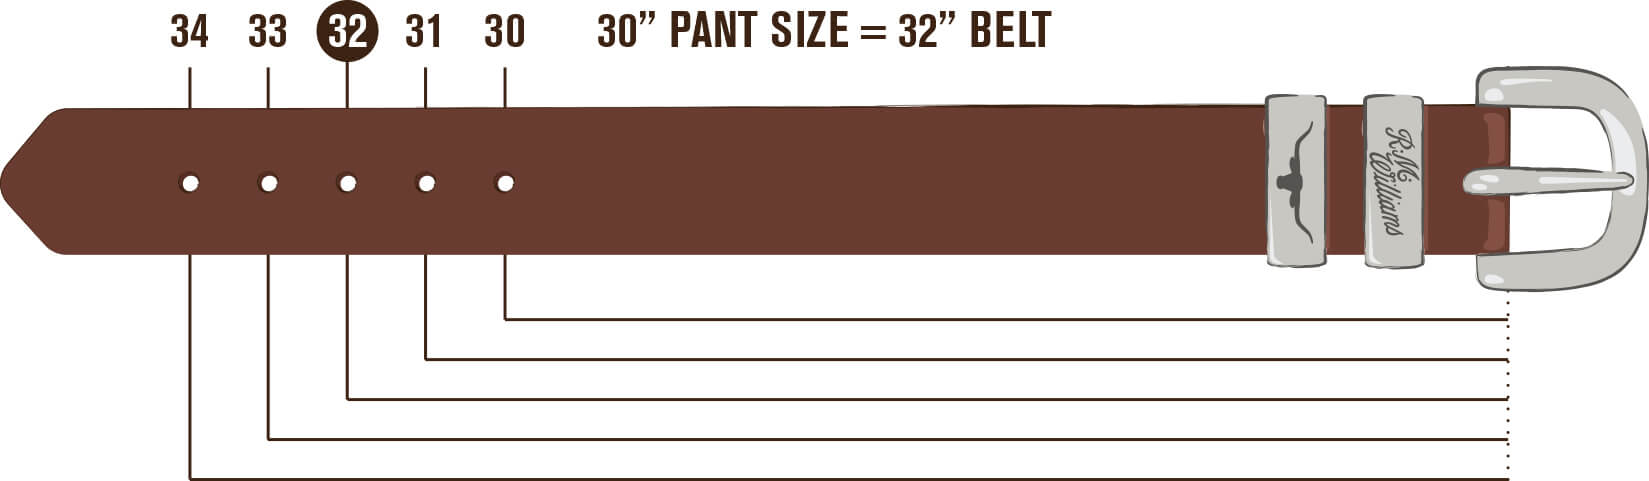 Mens Belt Size Guide